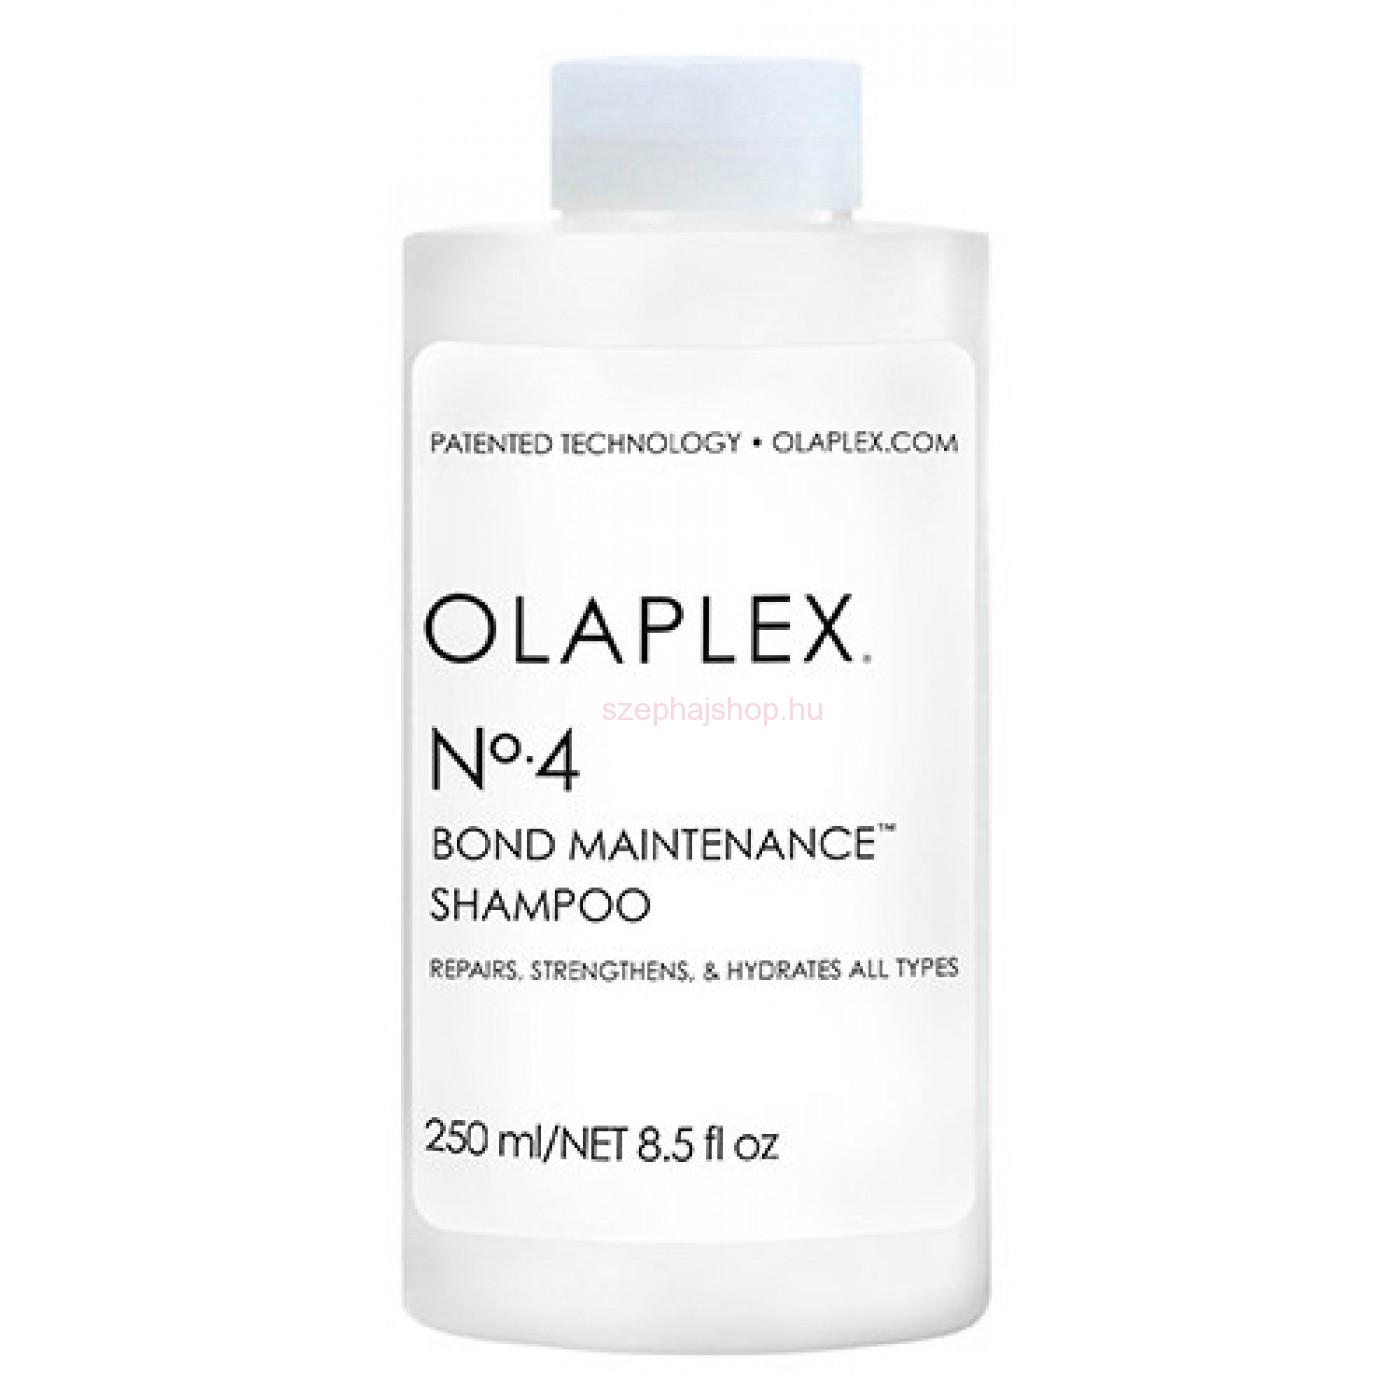 OLAPLEX Bond Maintenance Shampoo N° 4 250 ml